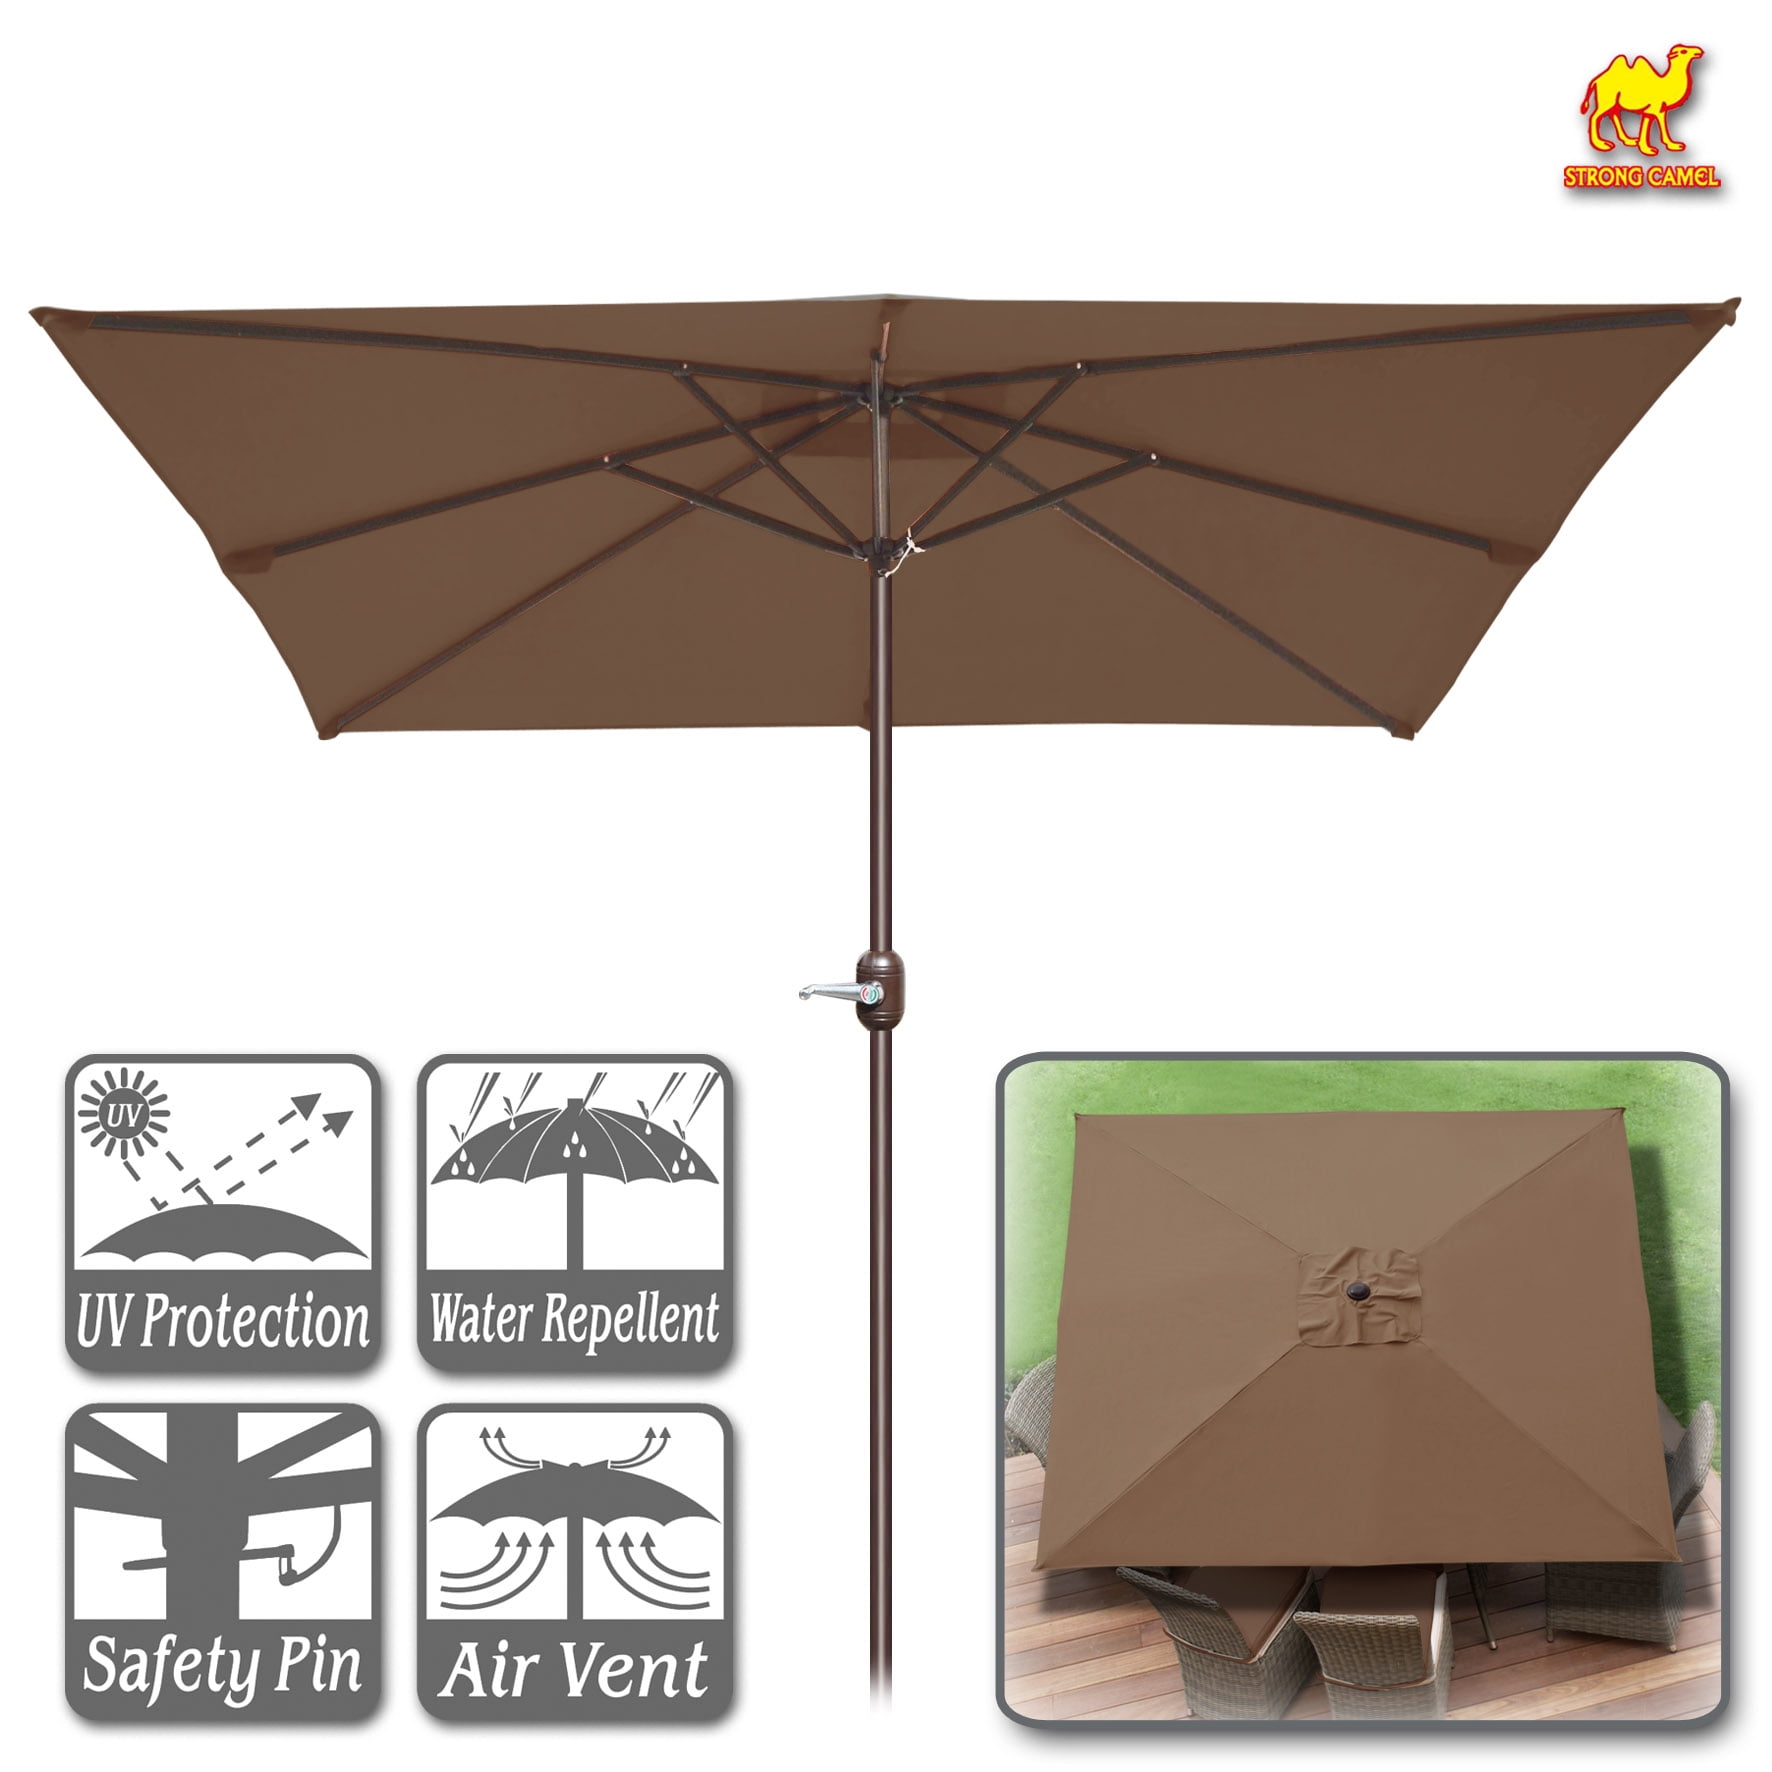 Strong Camel 8' x 8' Outdoor Patio Umbrella Sunshade Table Market Umbrella with Tilt&Crank for